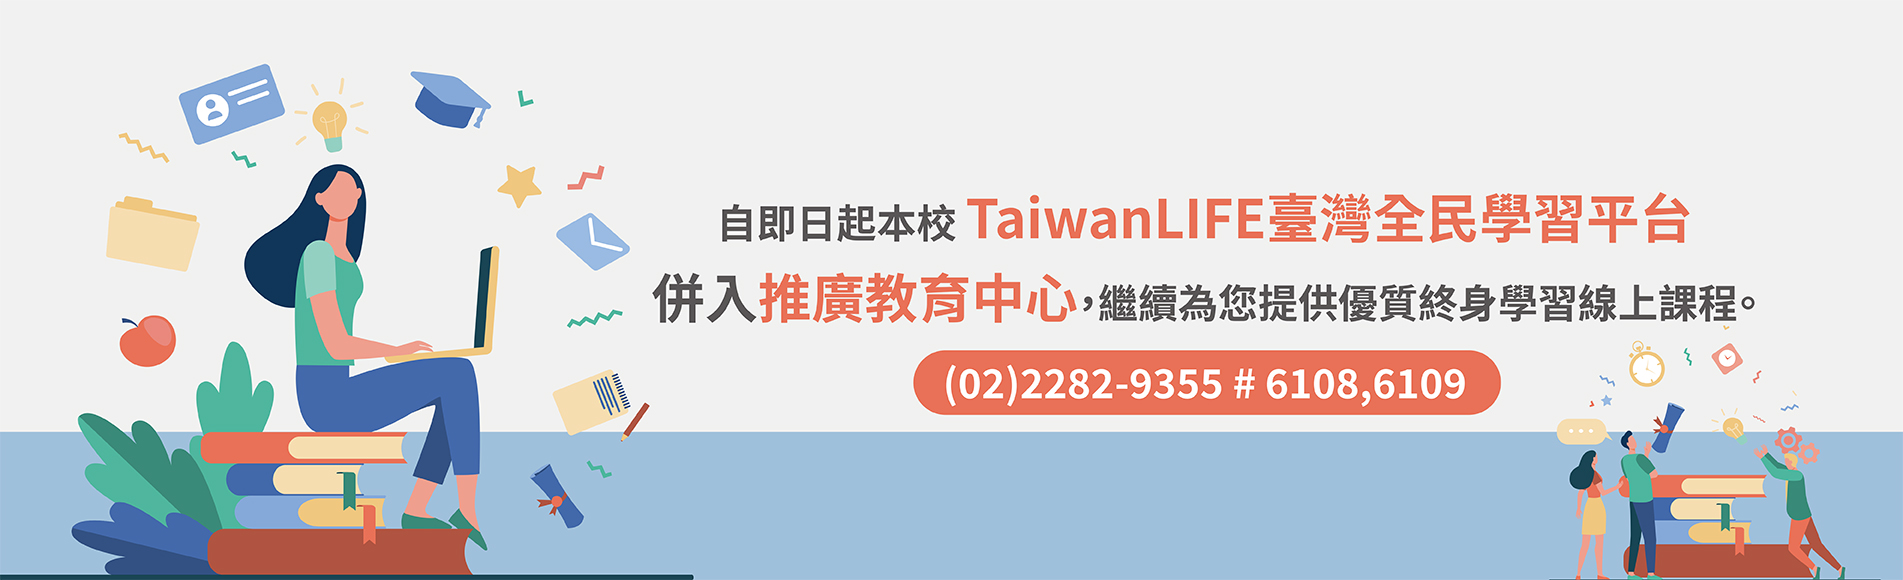 TaiwanLIFE平台併入推廣教育中心